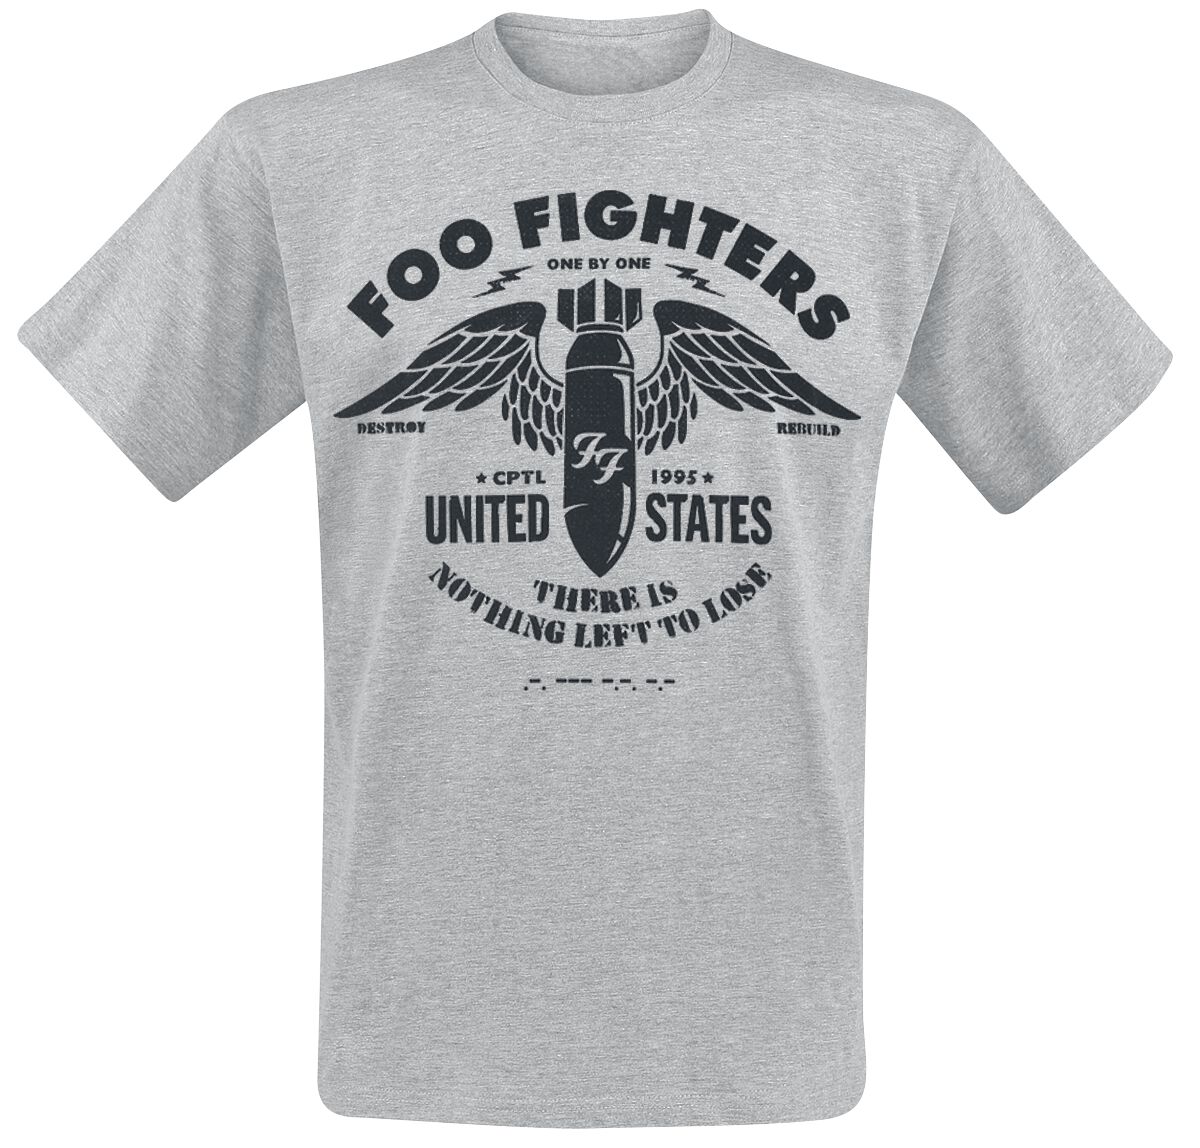 Foo Fighters T-Shirt - Stencil - S bis XXL - für Männer - Größe XXL - hellgrau meliert  - Lizenziertes Merchandise!